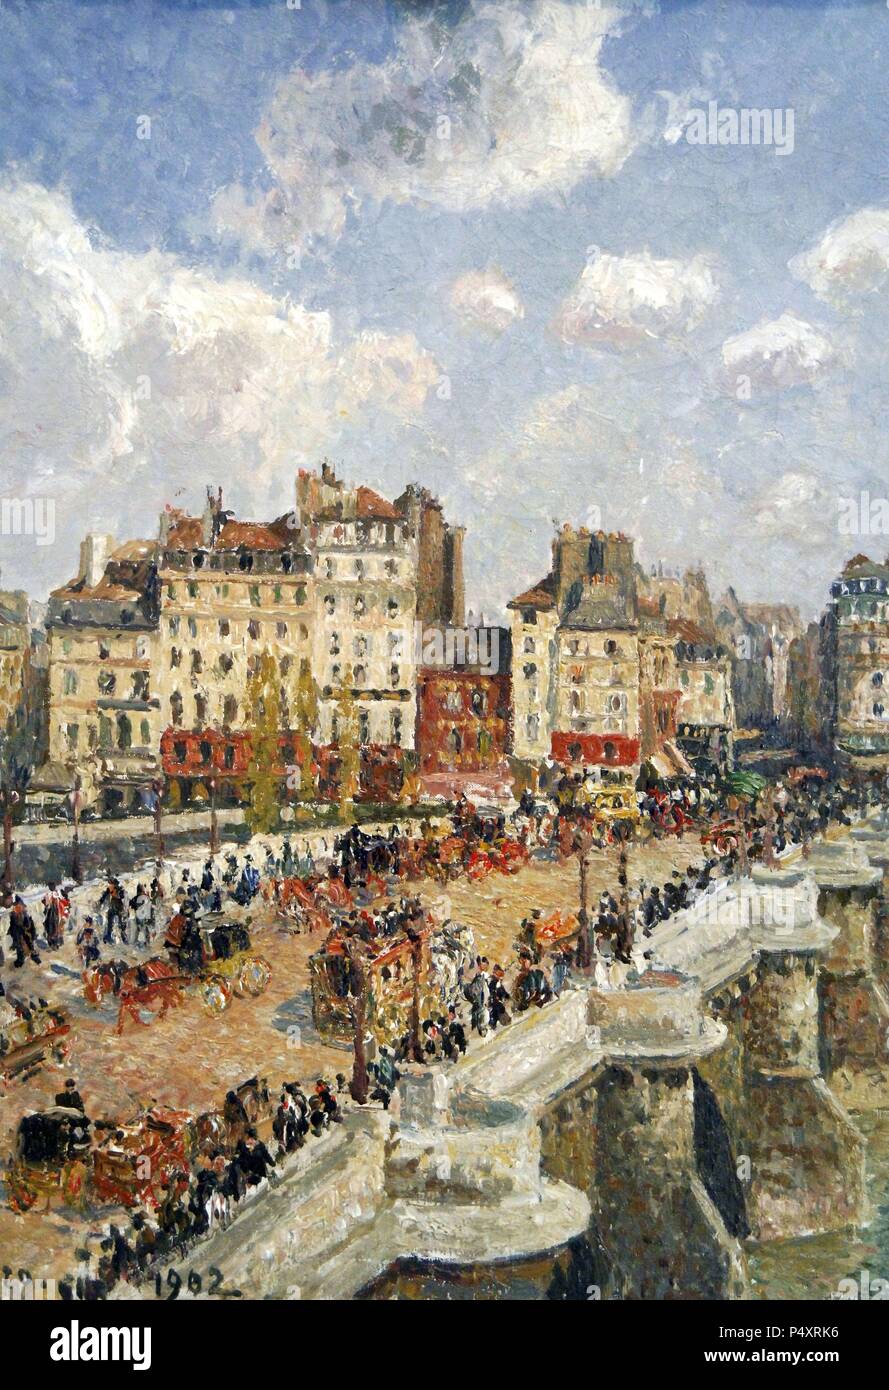 Camille Pissarro (1830-1930). Peintre français, fondateur du mouvement impressionniste. 'Le Pont-Neuf' (1902). Musée des beaux-arts de Budapest. La Hongrie. Banque D'Images